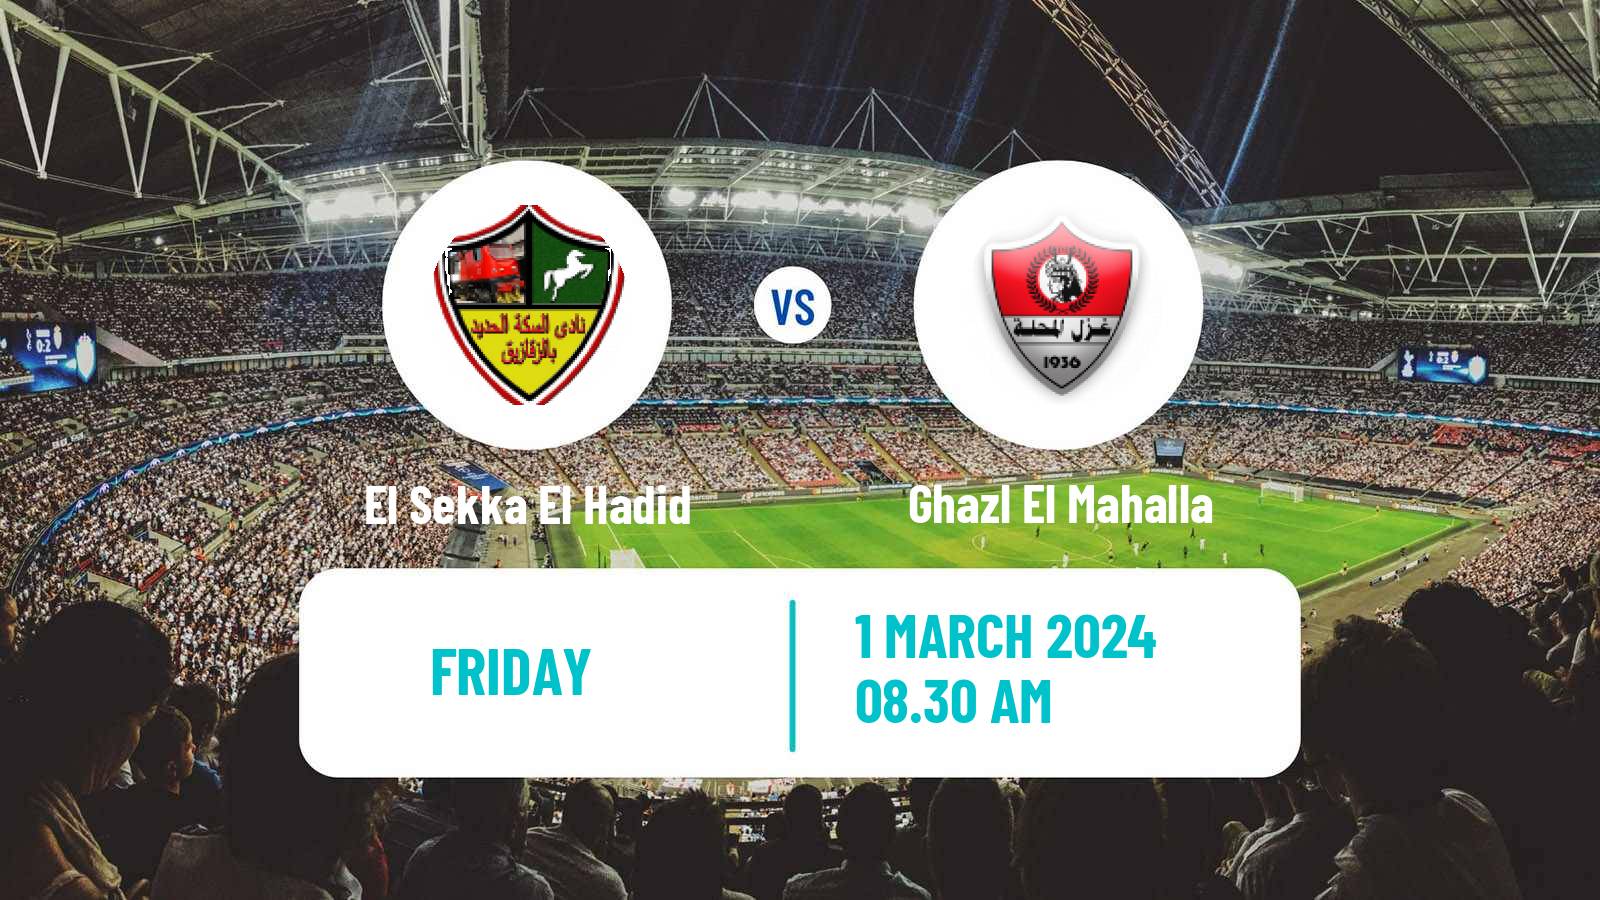 American football Egyptian Division 2 A El Sekka El Hadid - Ghazl El Mahalla